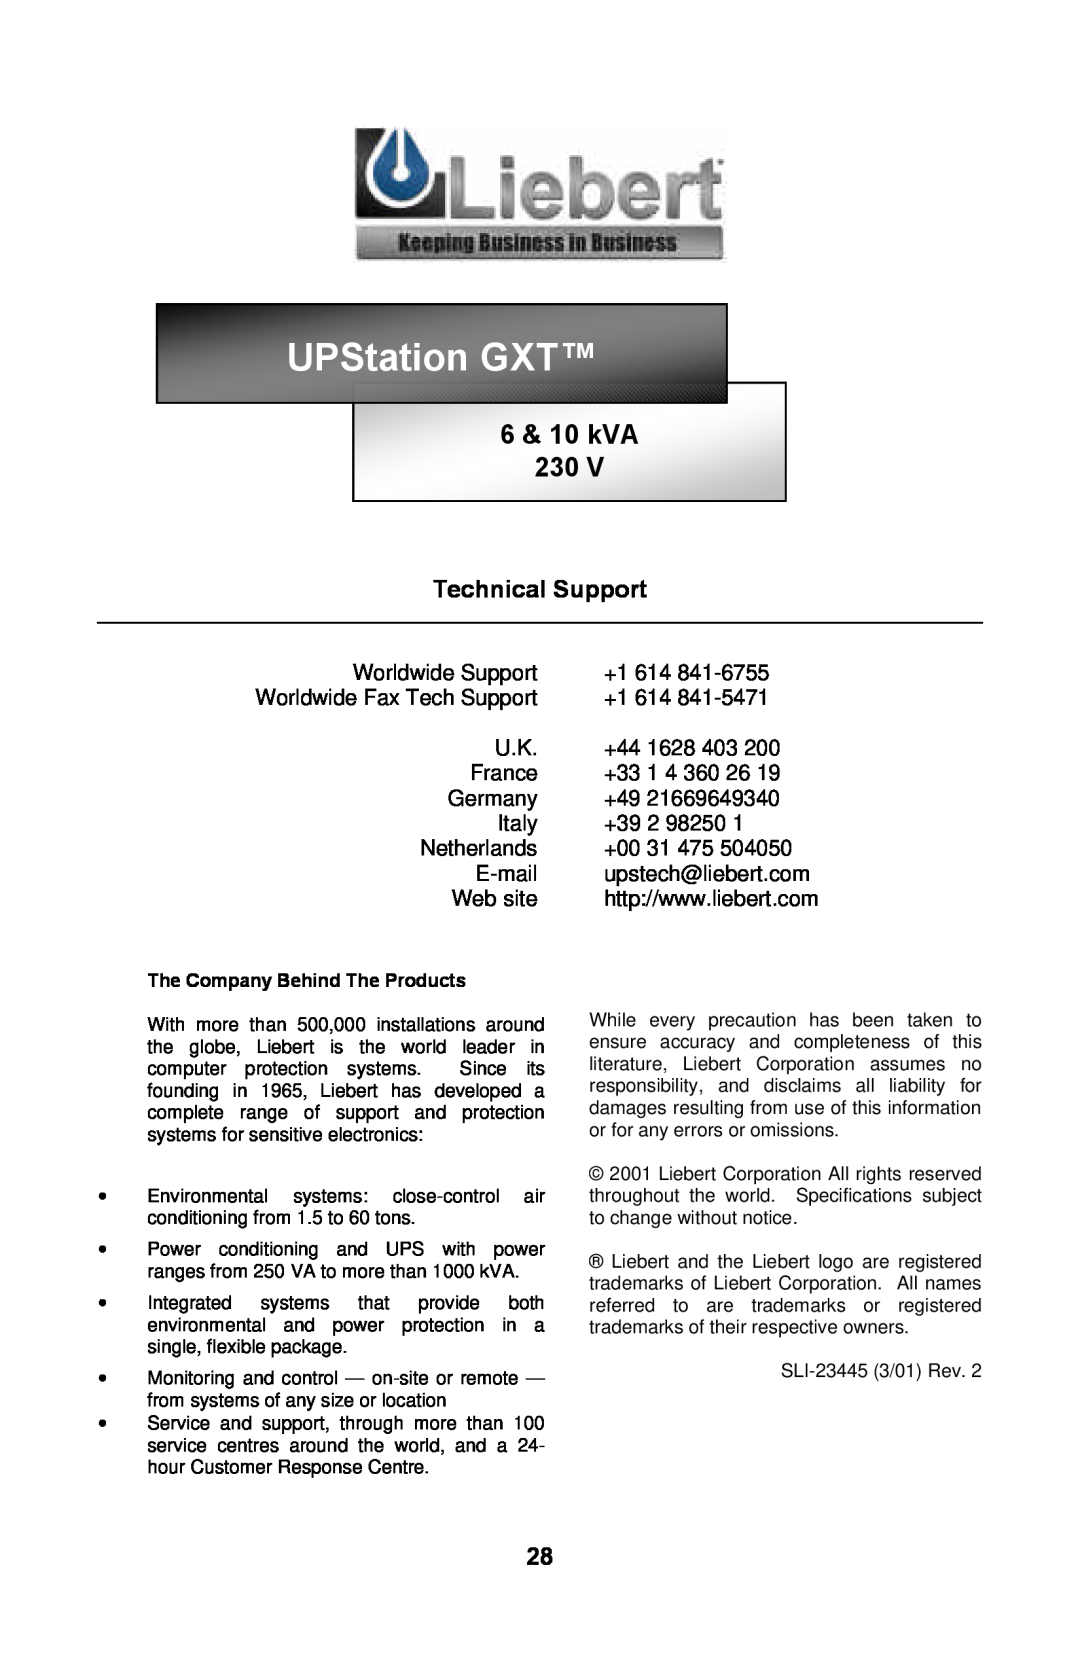 Liebert GXTTM user manual 6 & 10 kVA 230, UPStation GXT, Technical Support 